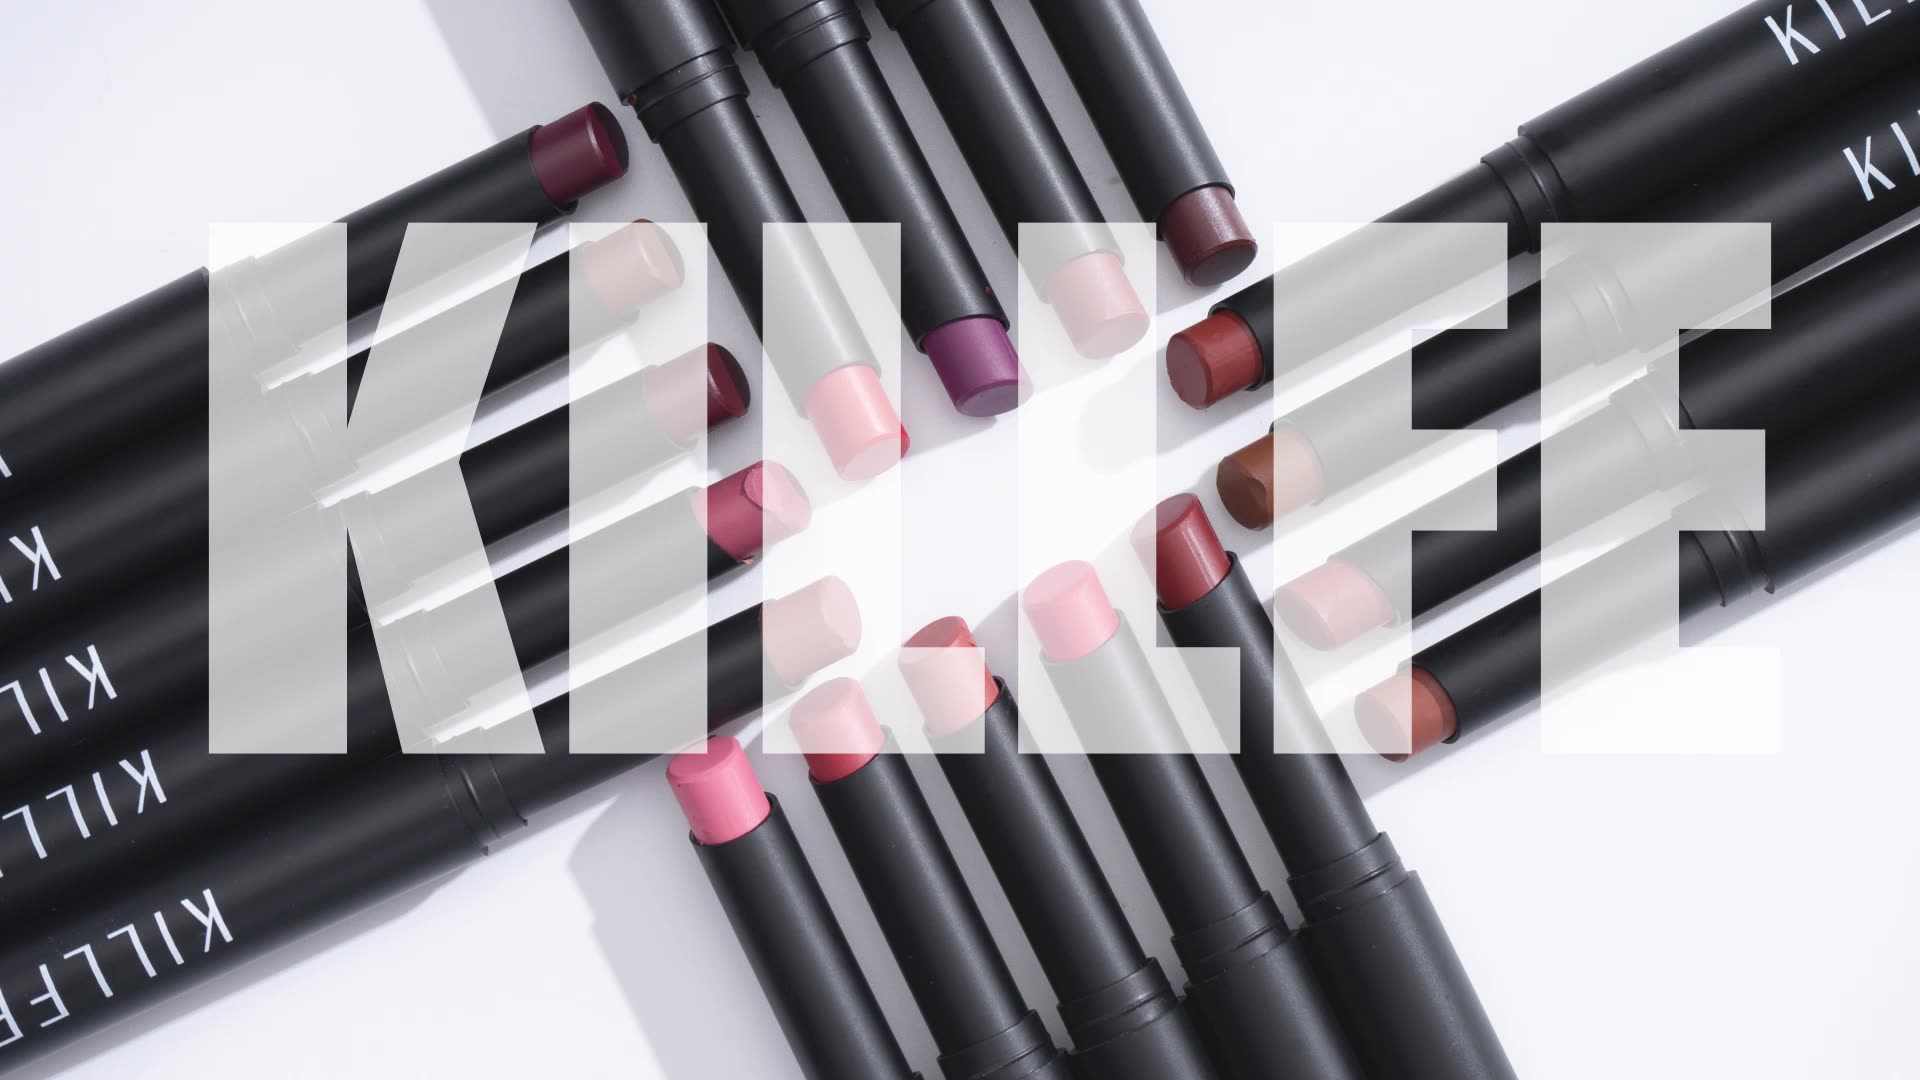 Banffee 20 colors private label lipstick lipstick matte wholesale lipstick Factory Price